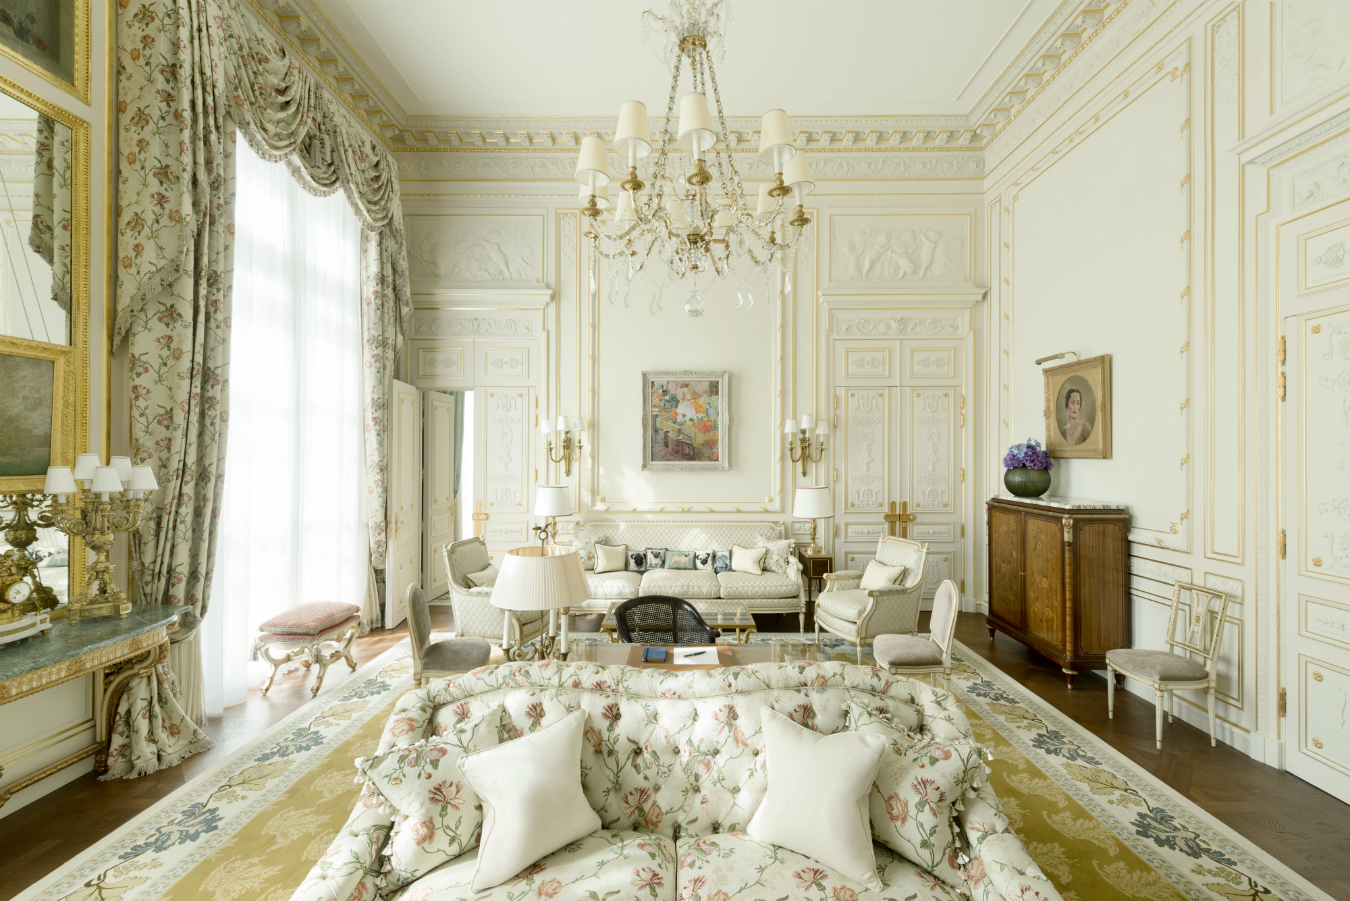 Inside the Hôtel Ritz Paris